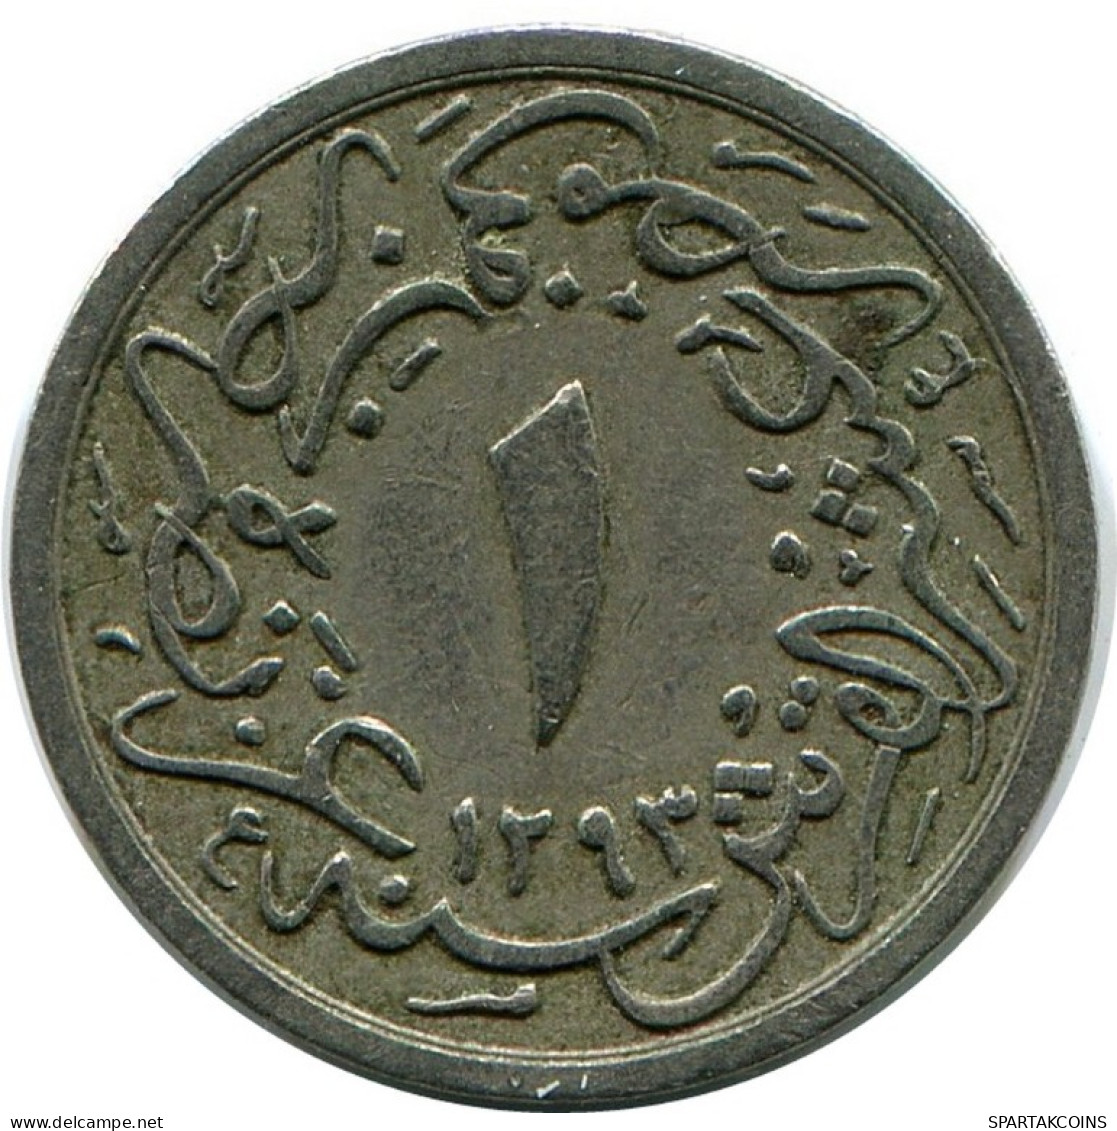 1/10 QIRSH 1898 EGYPTE EGYPT Islamique Pièce #AK341.F.A - Egypt